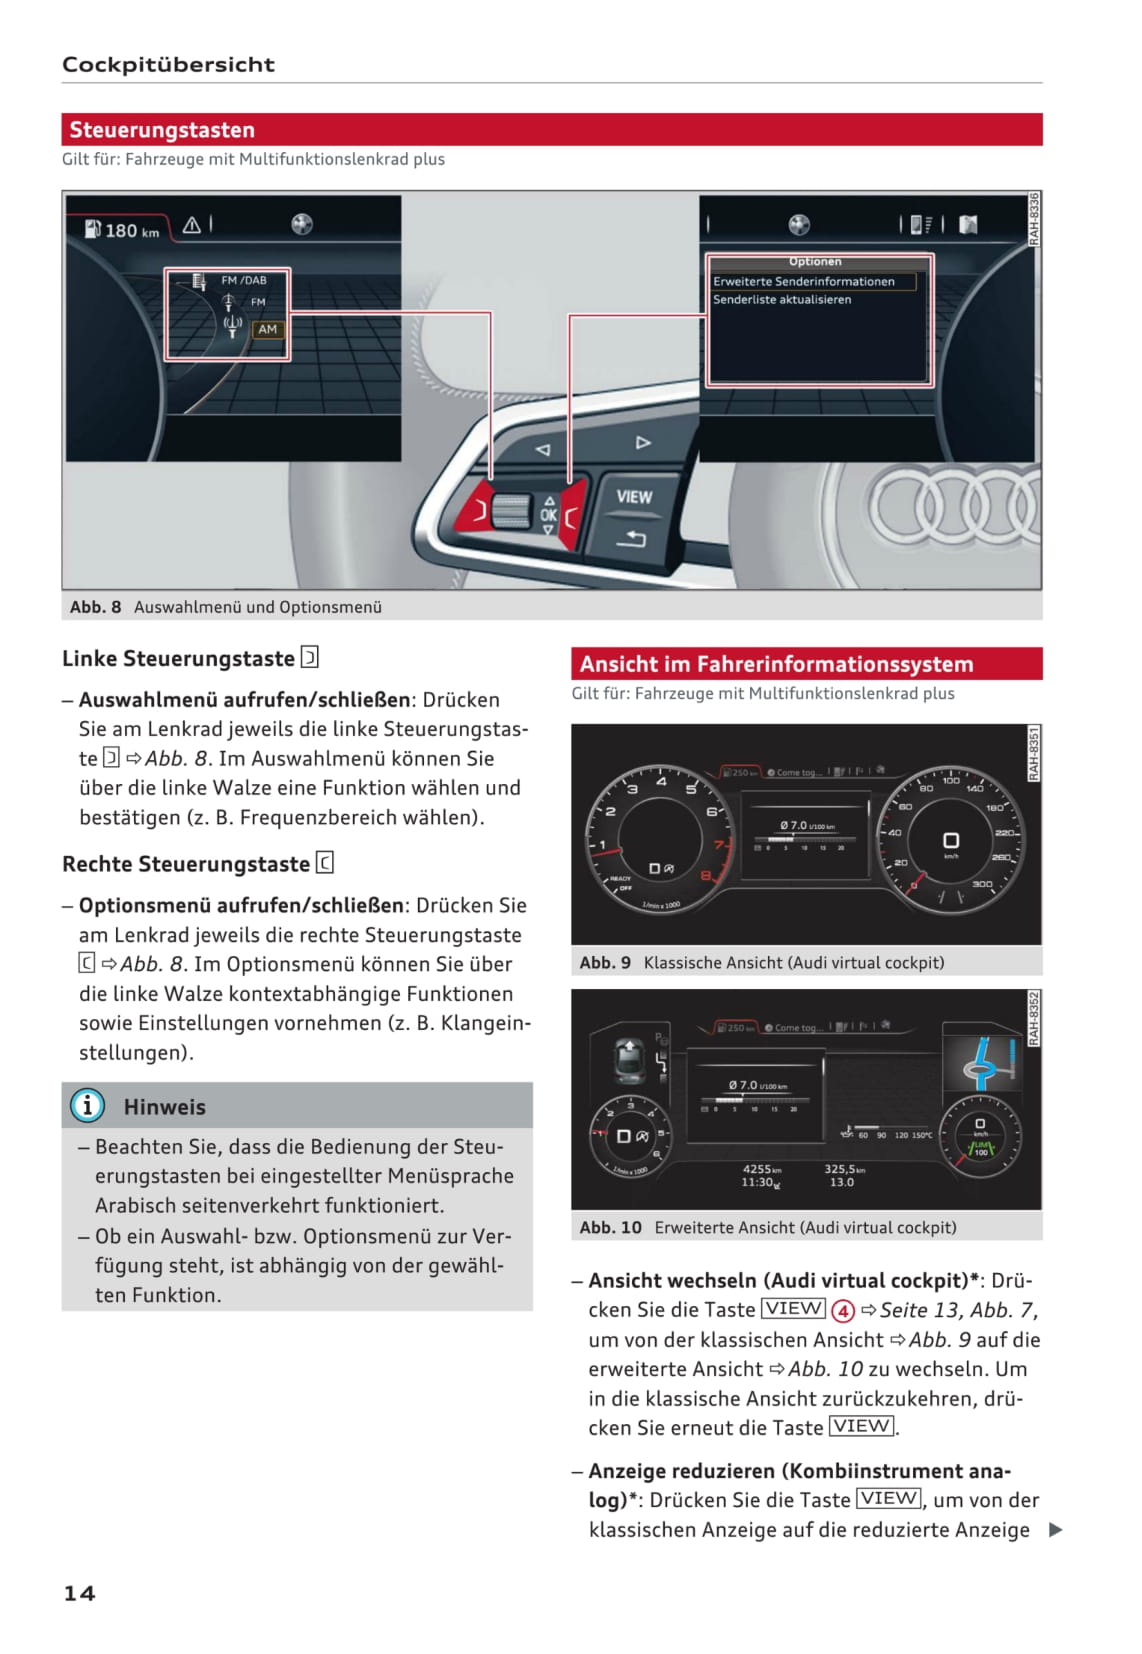 Handleiding Audi A4 (pagina 14 van 16) (Duits)